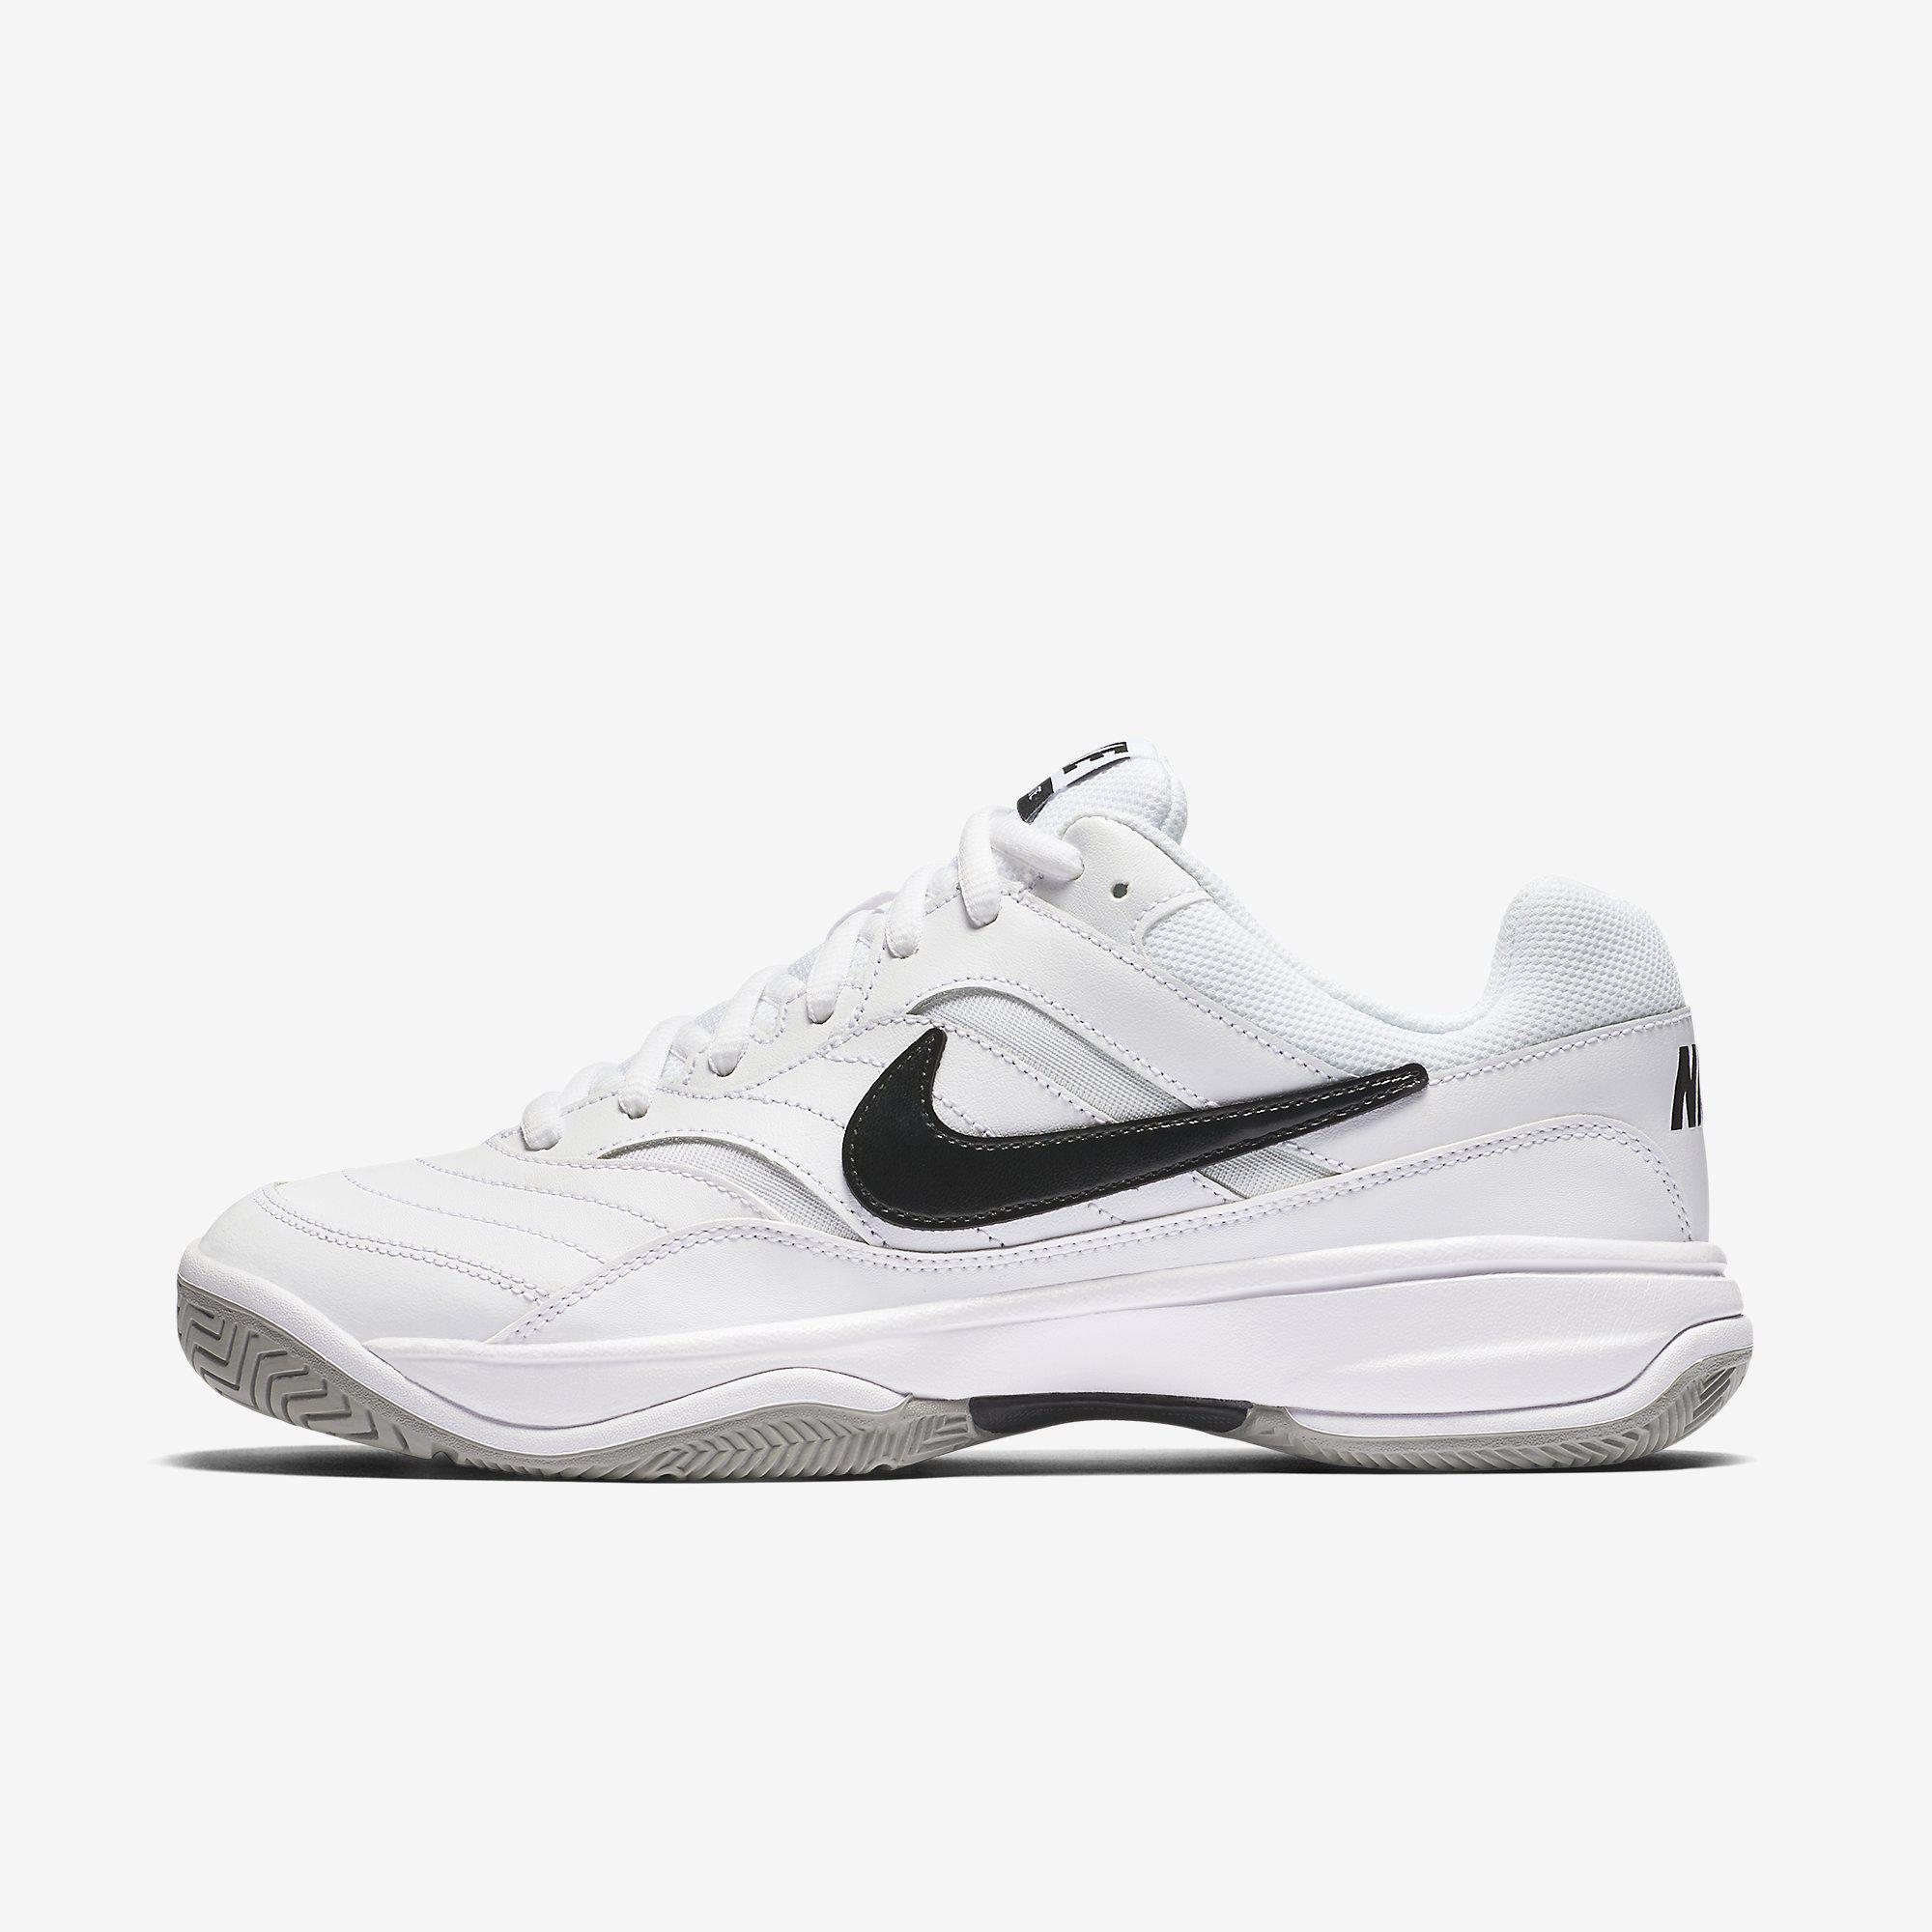 Nike Mens Lite Tennis Shoes - White - Tennisnuts.com